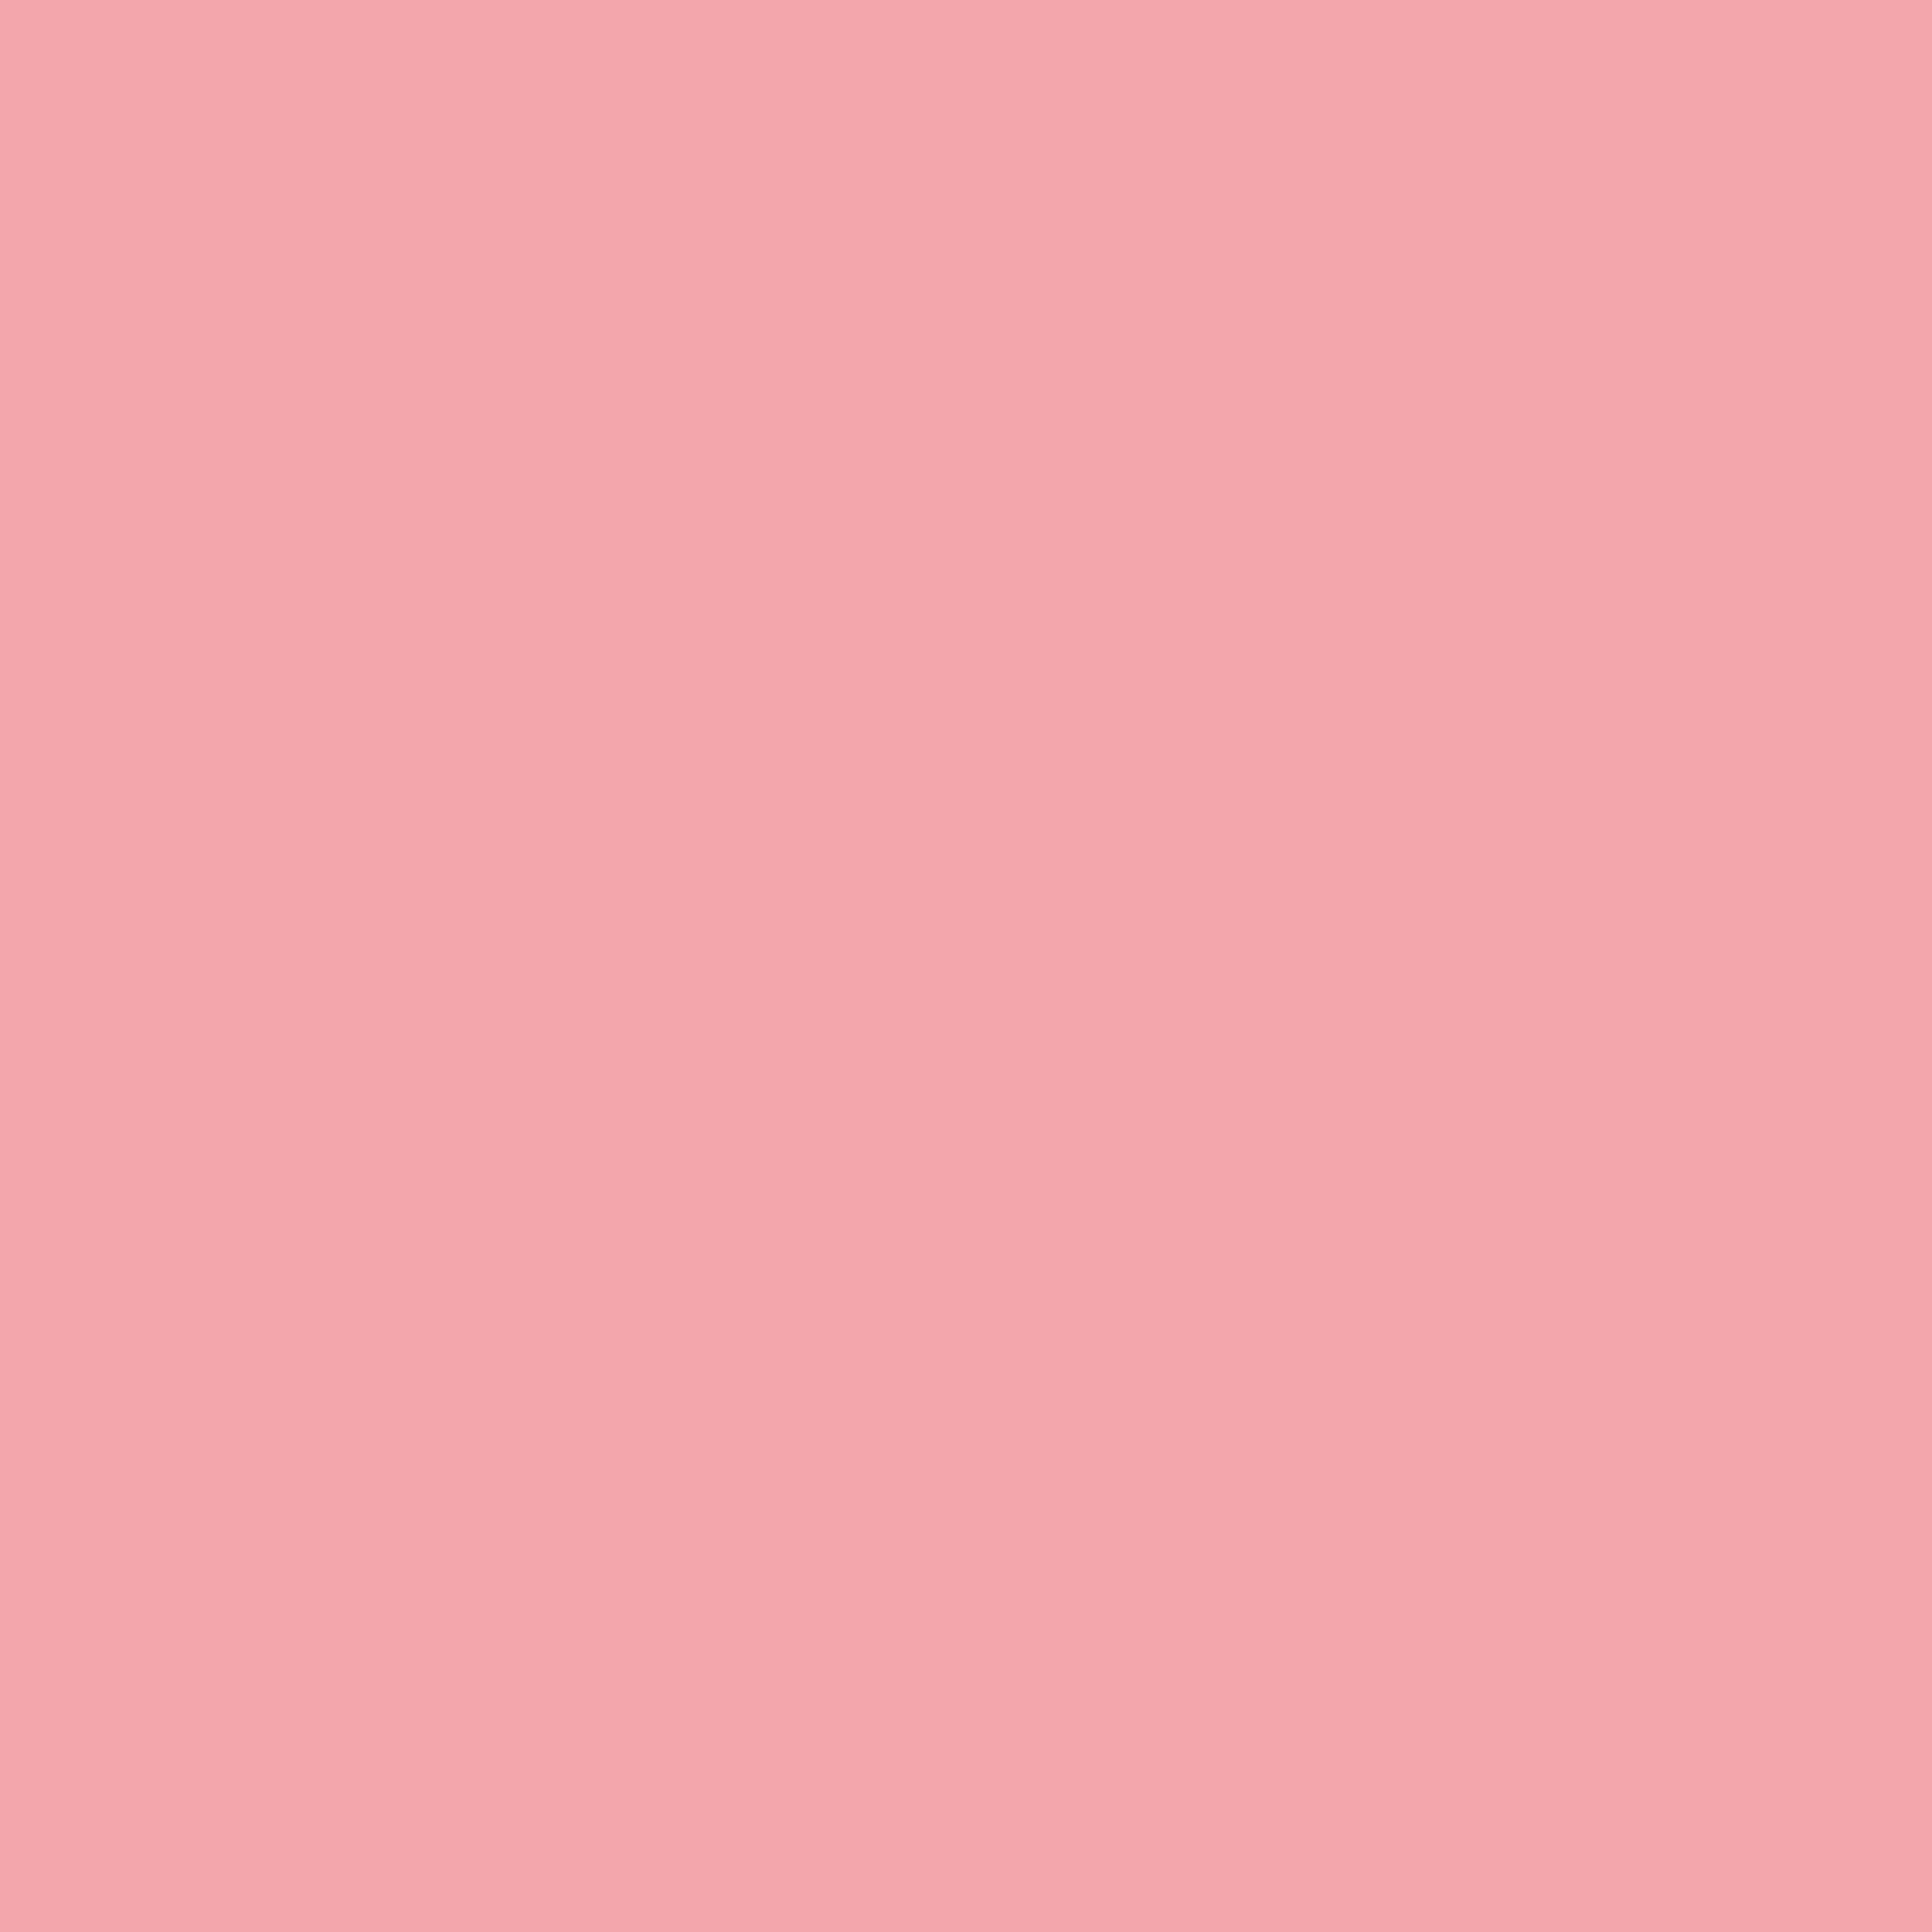 003 Elegant Pink